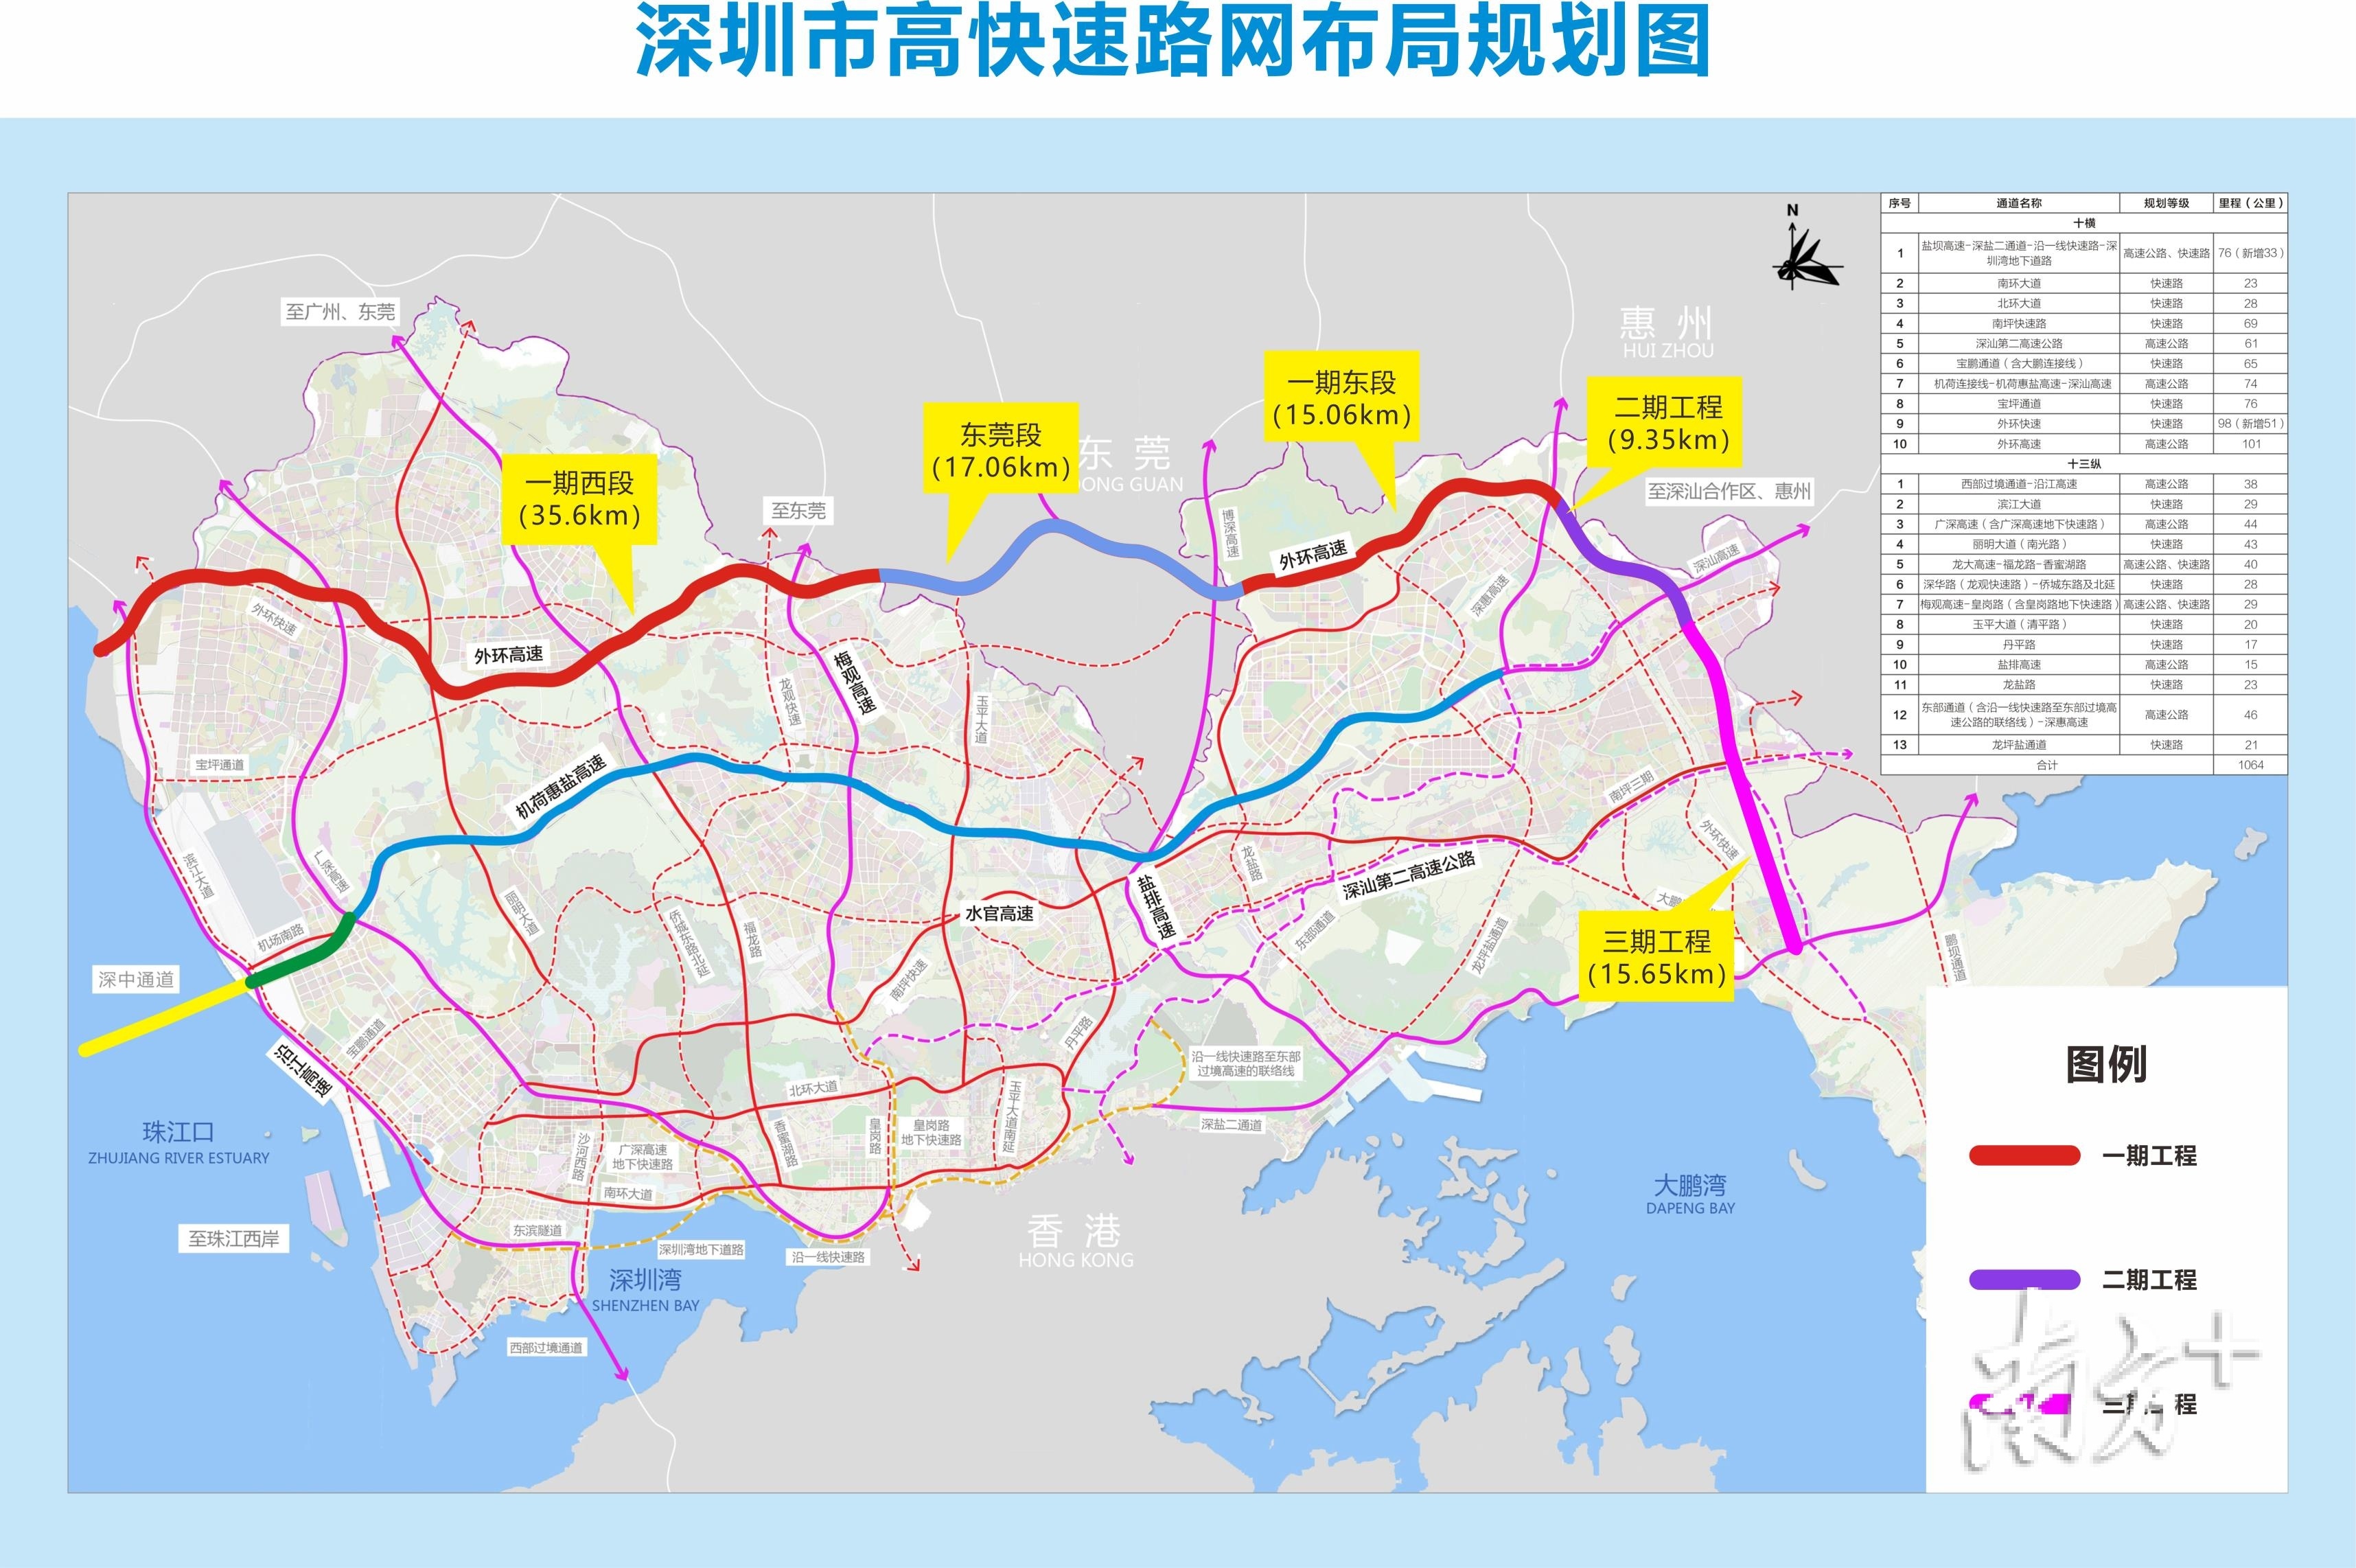 广河高速路线图:广河高速全称“广州－河源高速公路”_土筑虎工程网